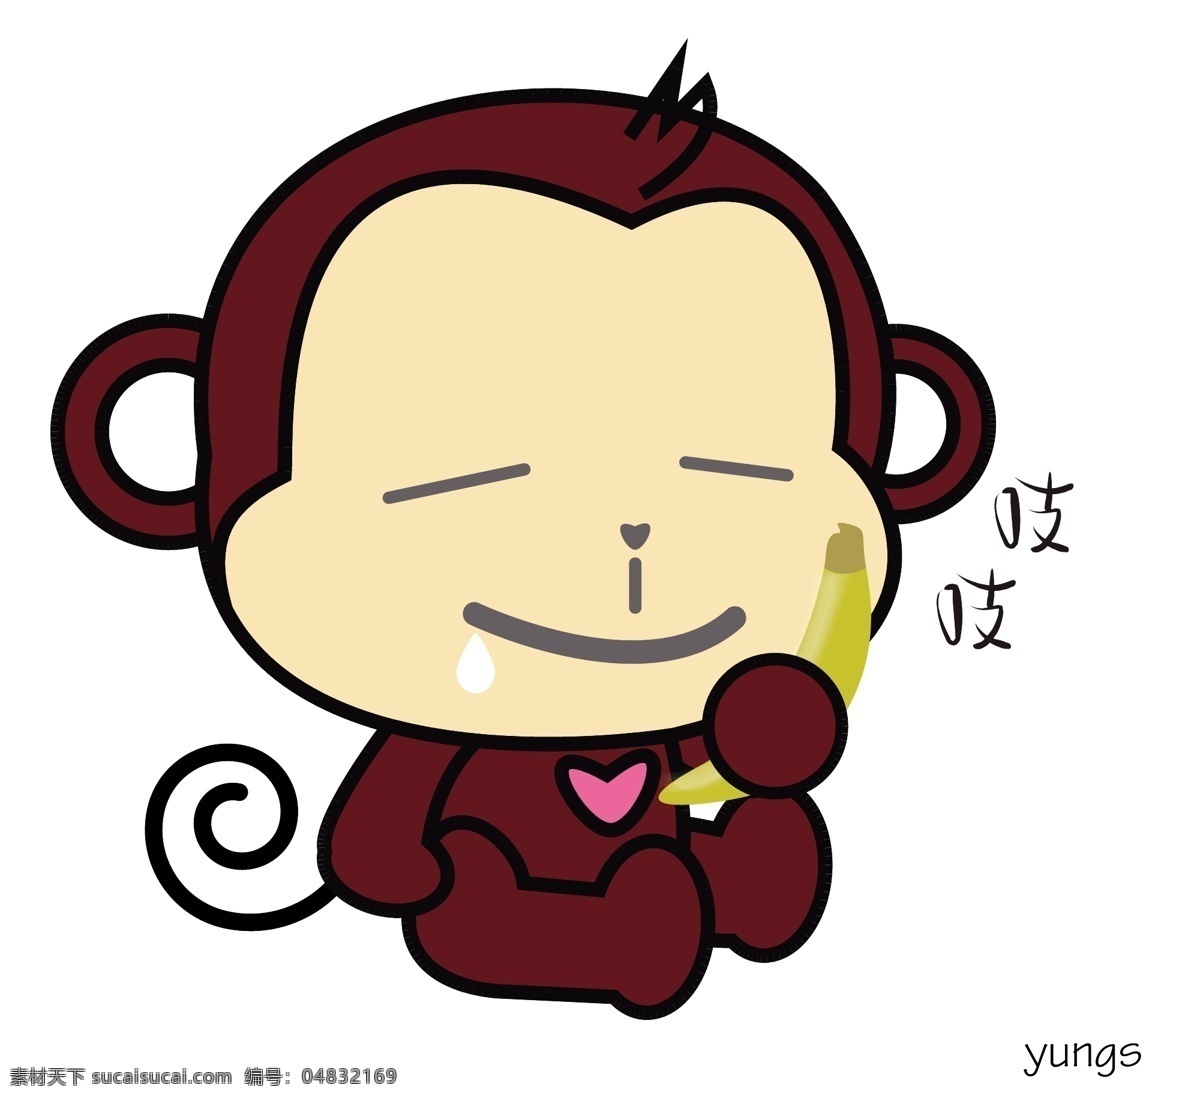 愛吃猴 猴子 動物 卡通 向量 动漫动画